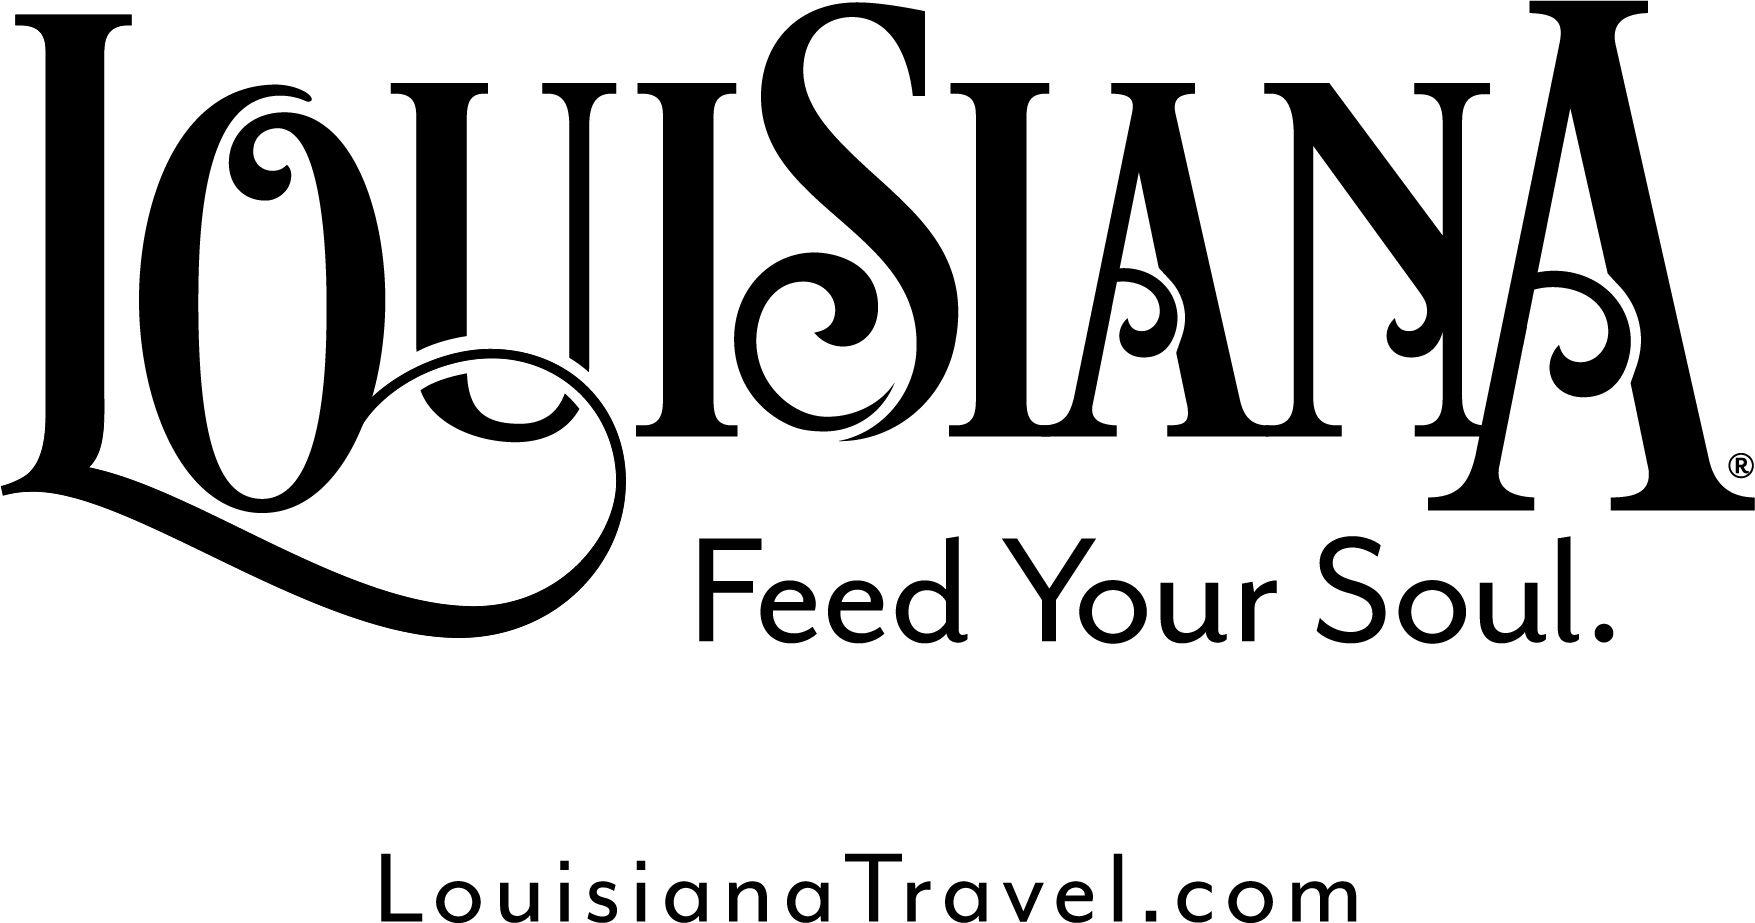 Louisiana.gov Logo - Industry Partners. Louisiana Office of Tourism